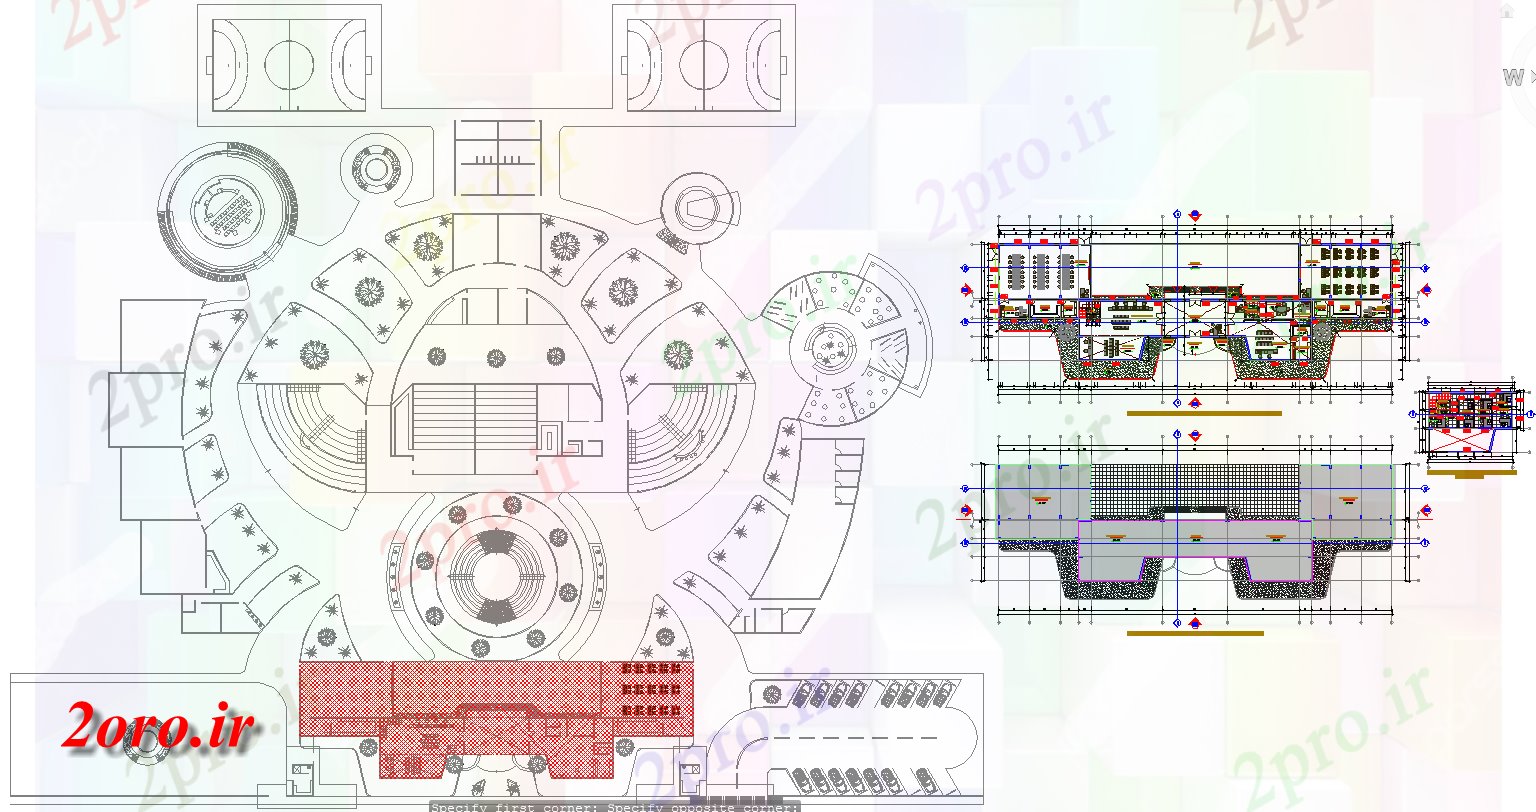 دانلود نقشه ساختمان اداری - تجاری - صنعتی دولت میدان MTR طرحی معماری و طراحی دفتر 15 در 50 متر (کد58031)